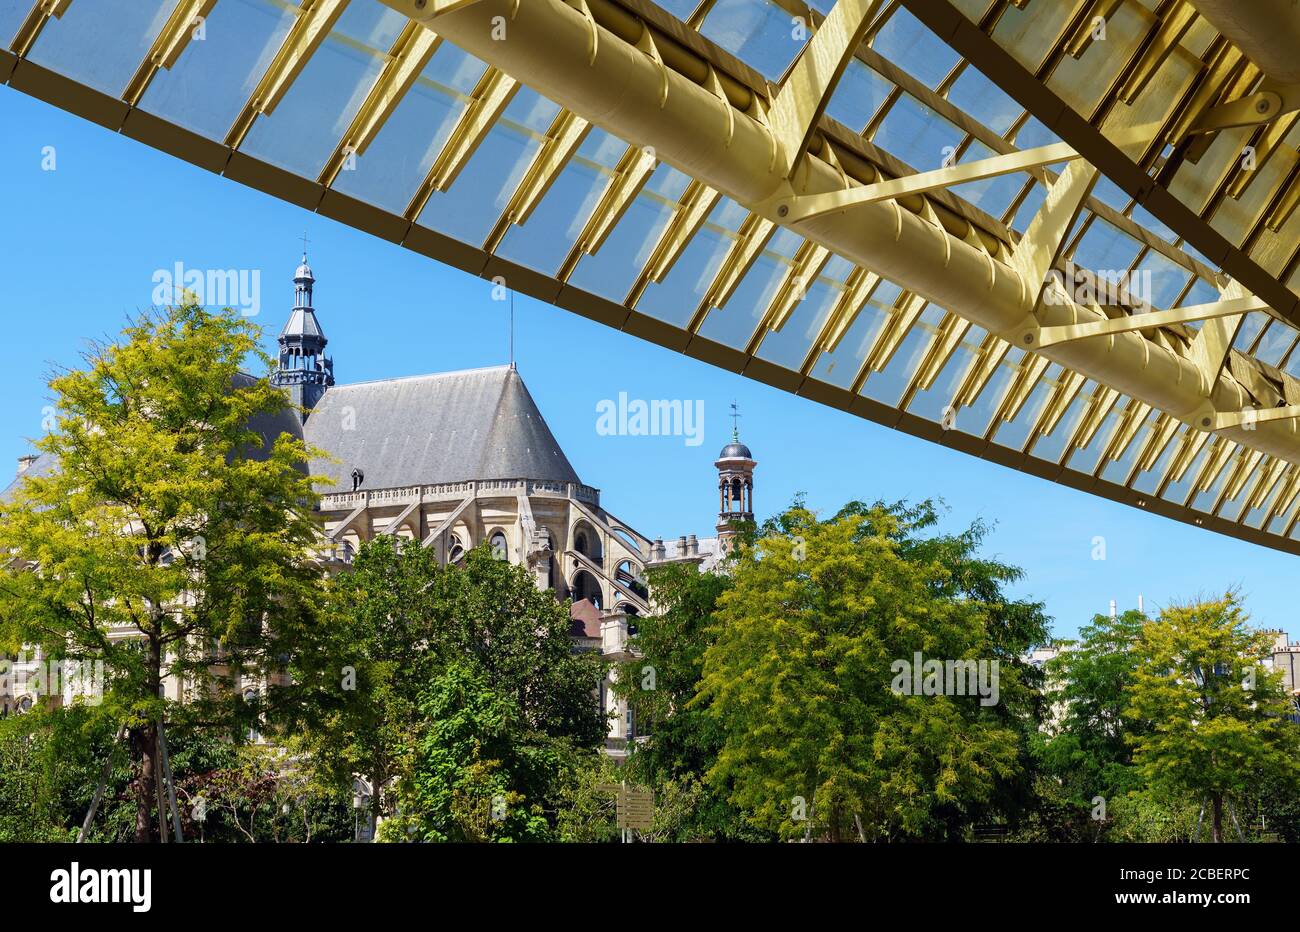 Église Saint-Eustache et canopée moderne au Forum des Halles - Paris, France Banque D'Images